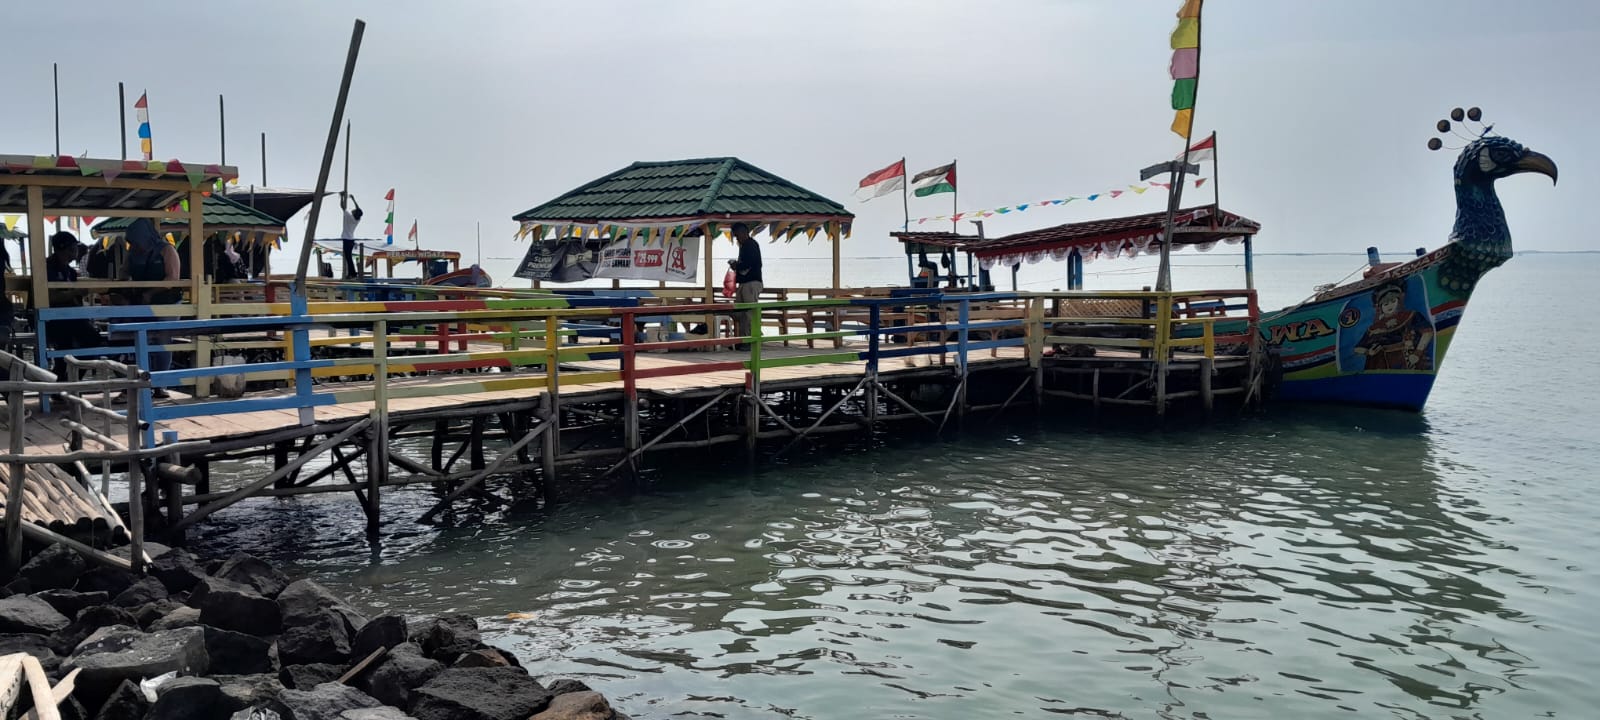 Pantai Baro Gebang Mekar Jadi Ikon Kuliner dan Wisata Bahari